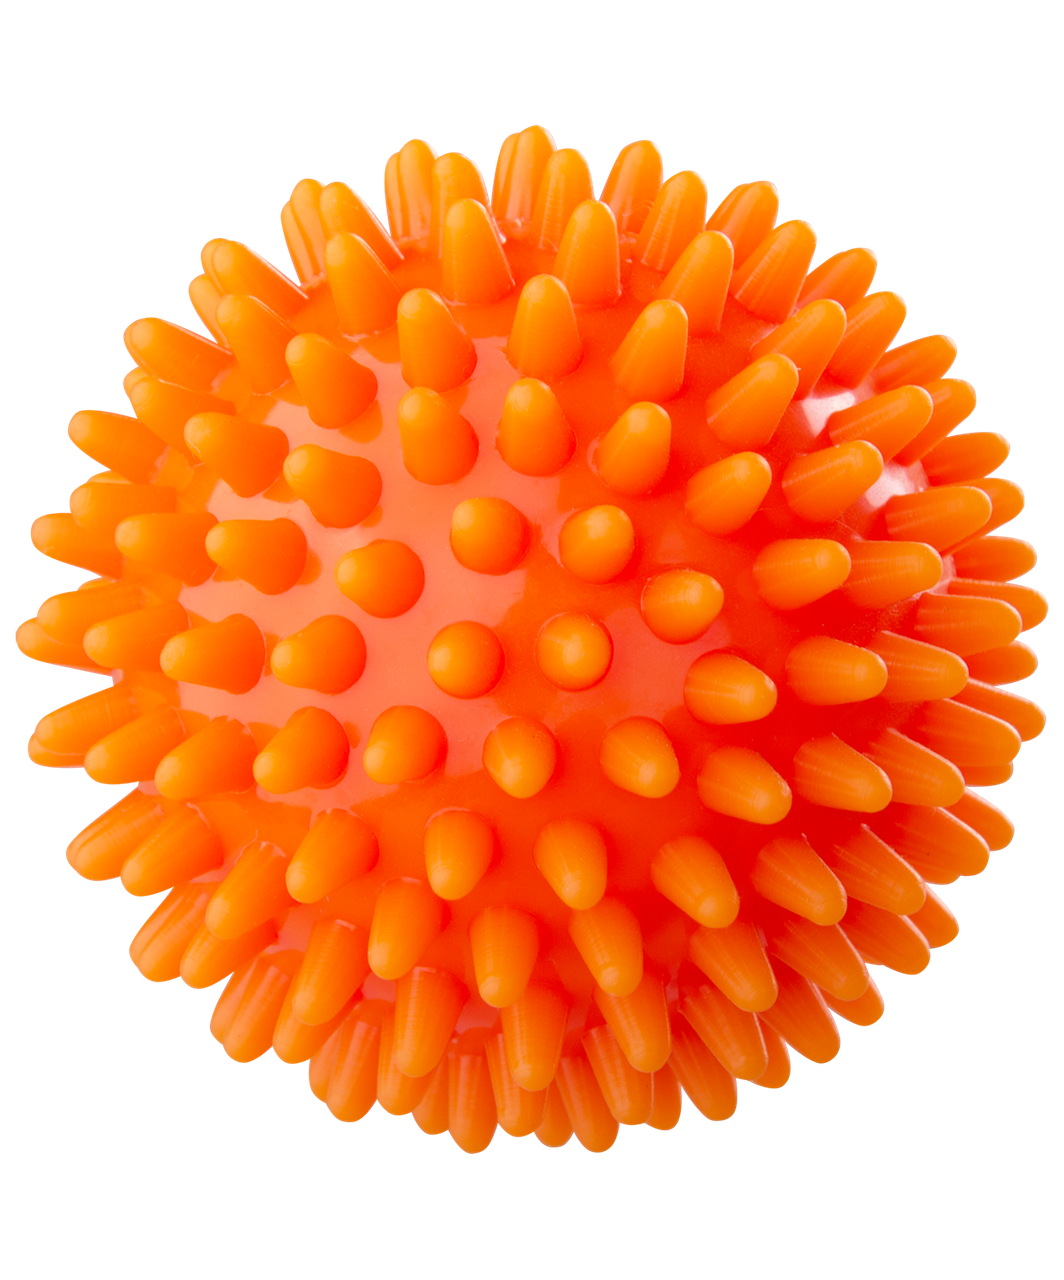 Мяч массажный GB-601 6 см, оранжевый